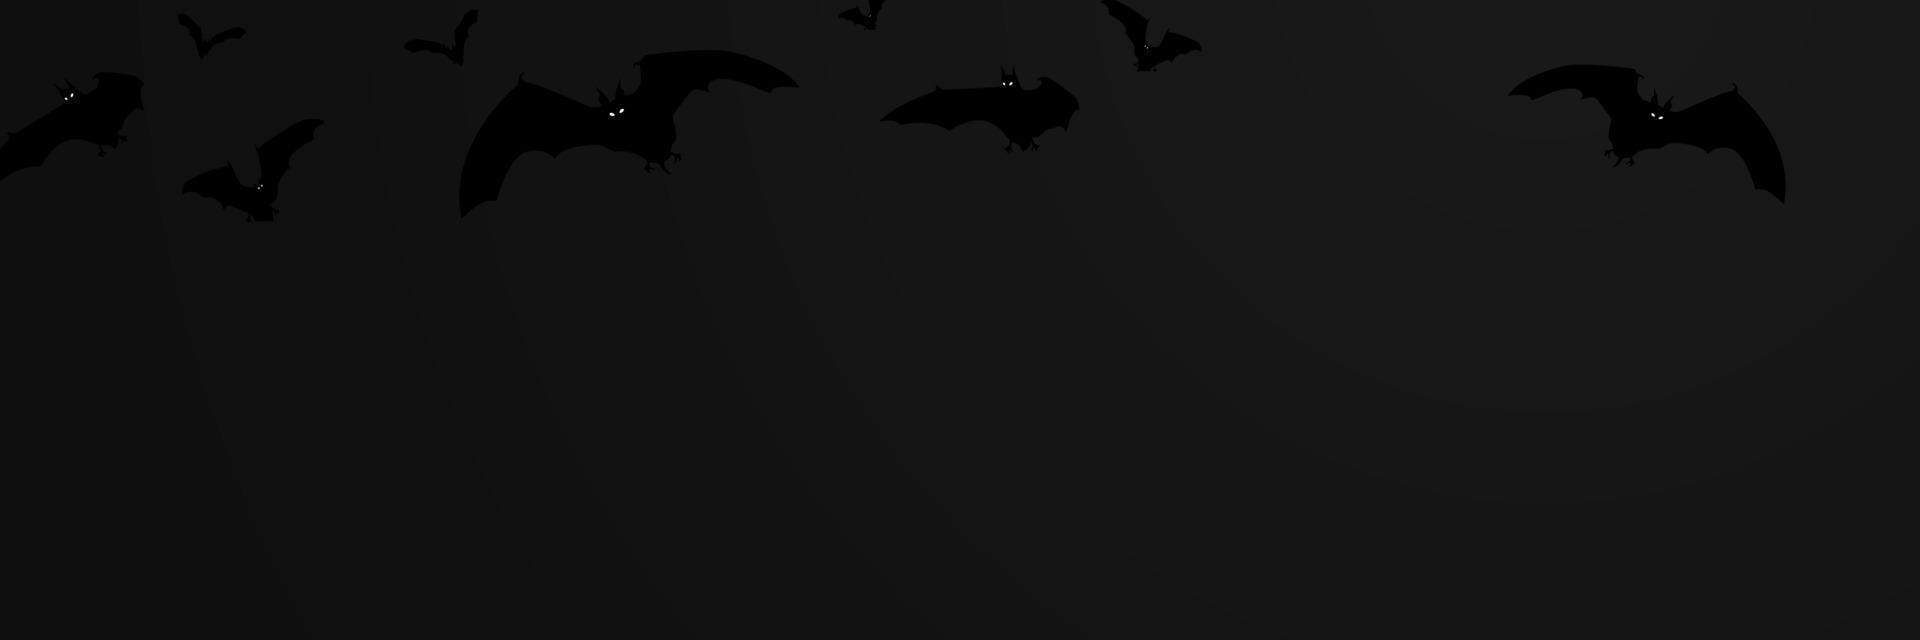 morcegos na ilustração vetorial de fundo escuro vetor